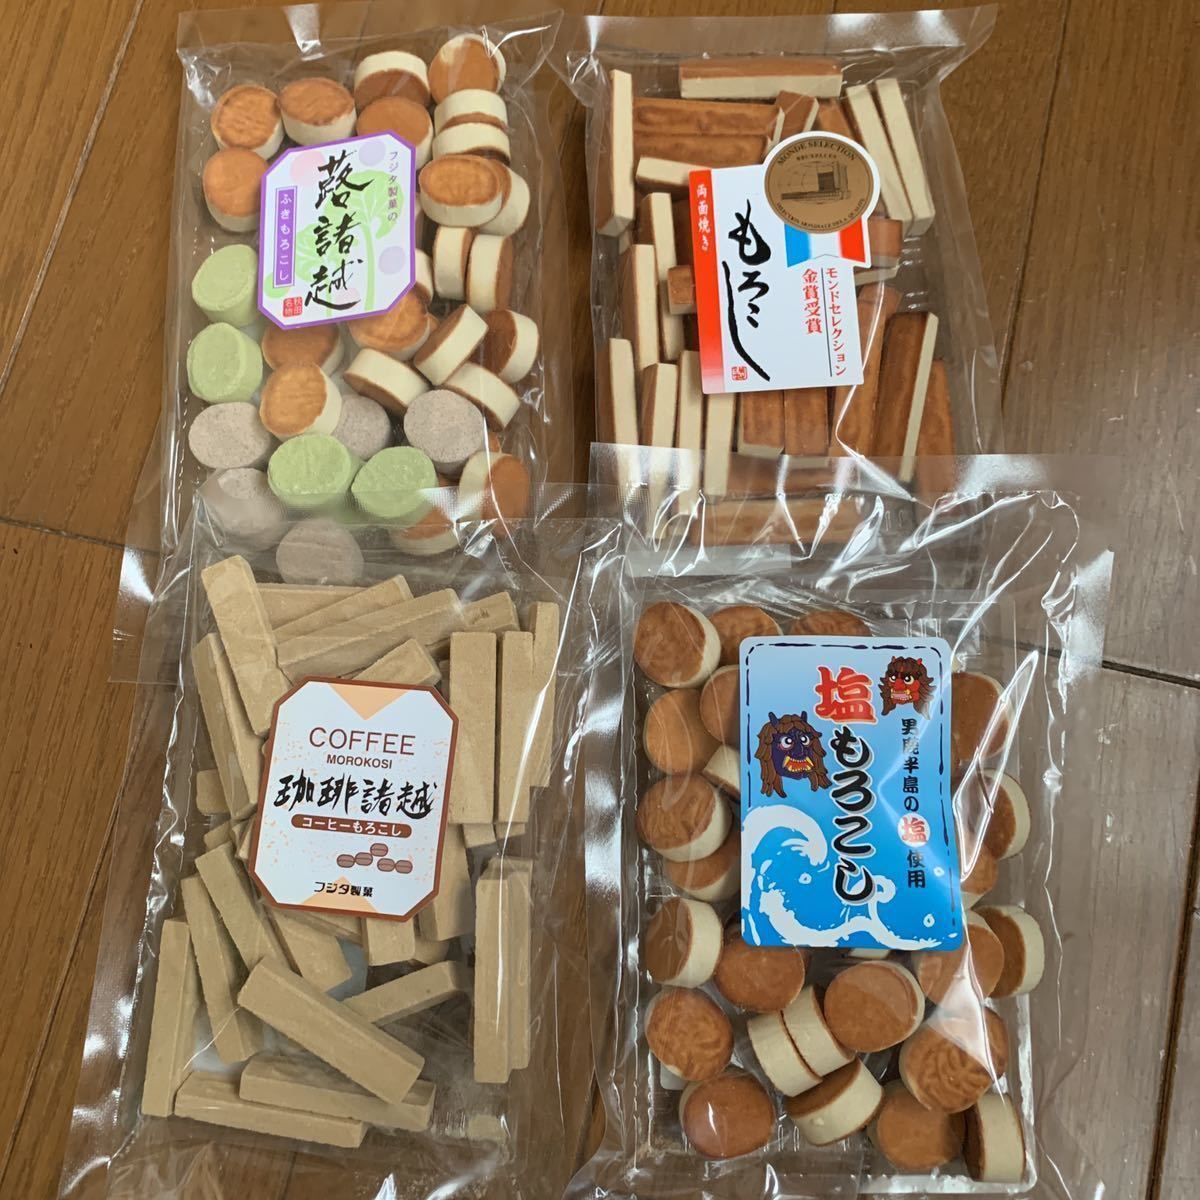 秋田銘菓 諸越 フジタ製菓 お菓子 もろこし組み合わせ 和菓子 4袋 和菓子 駄菓子